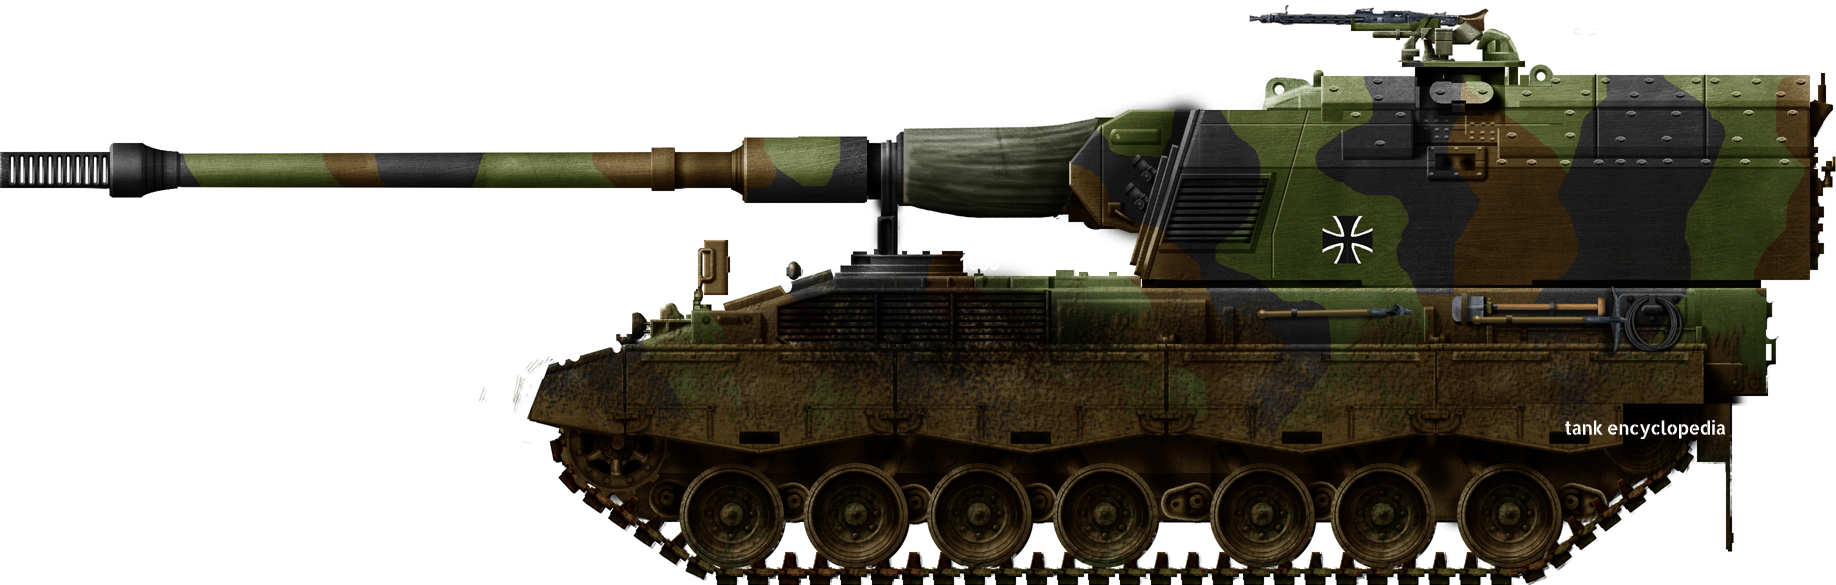 1/72 Panzerhaubitze 2000 №9 series of Modern Combat Vehicles 